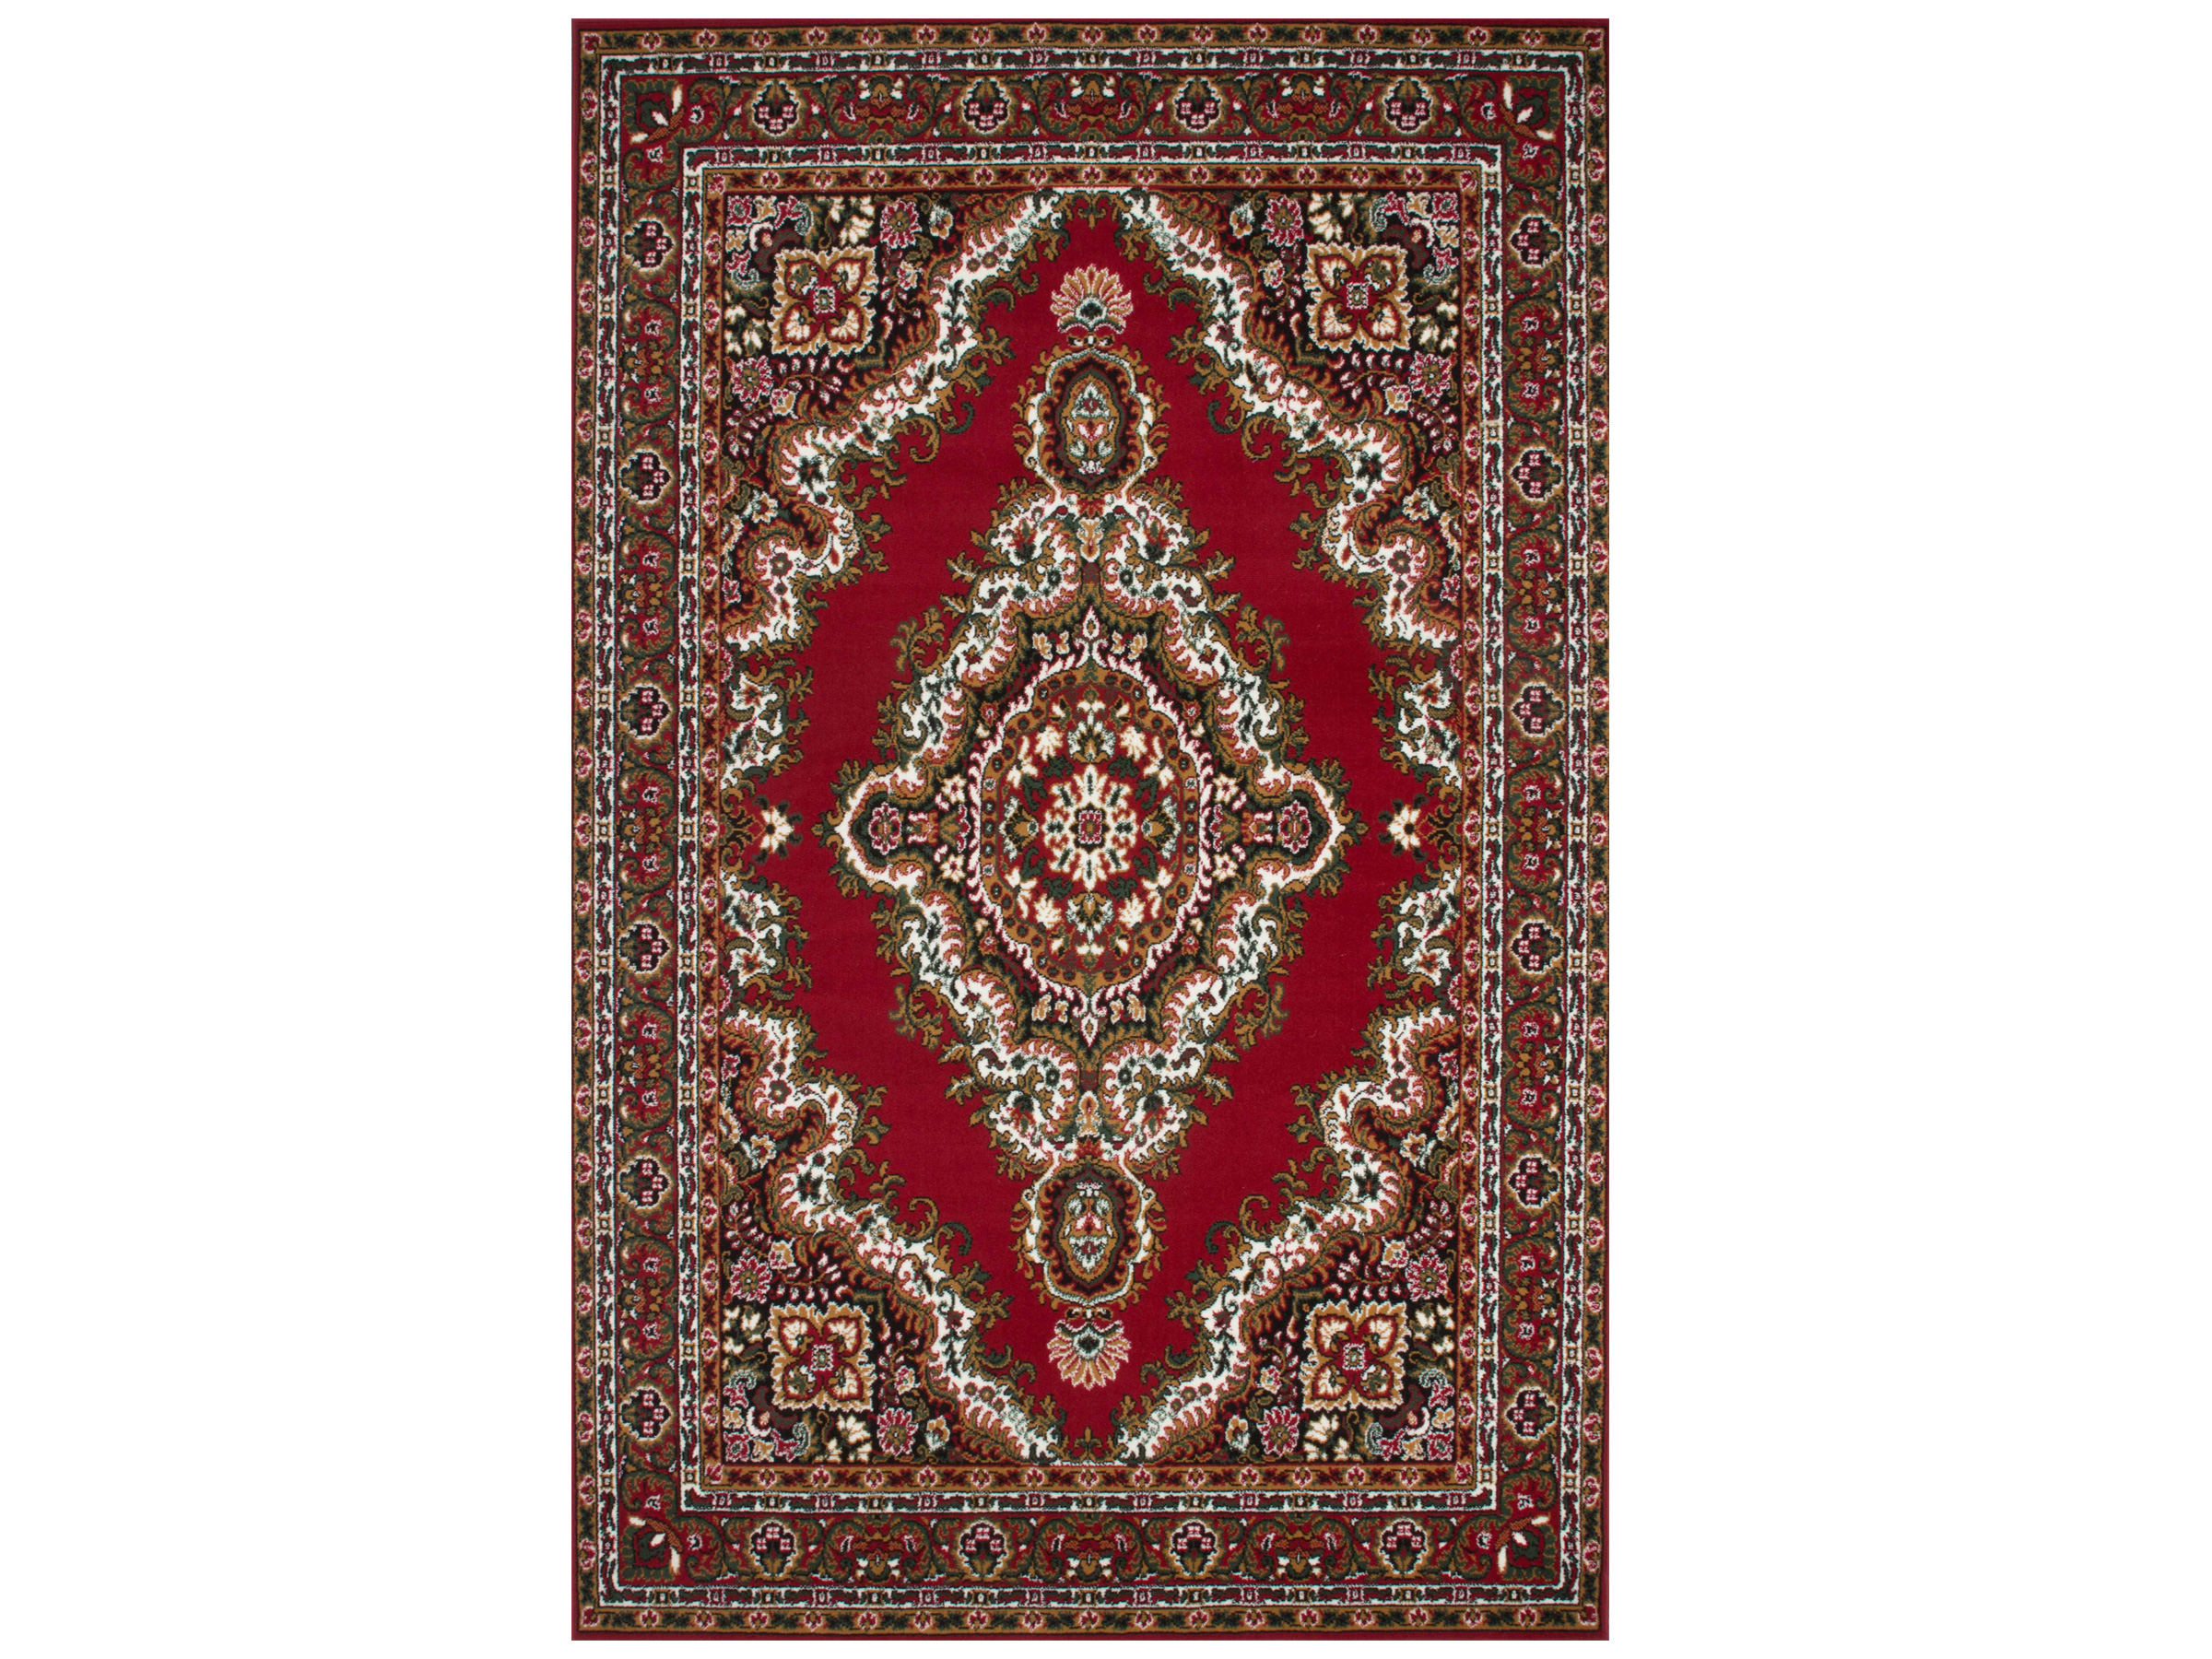 Schadelijk auditorium Gooi Perzisch tapijt kopen | Jouw Perzische vloerkleed vertrouwd bestellen